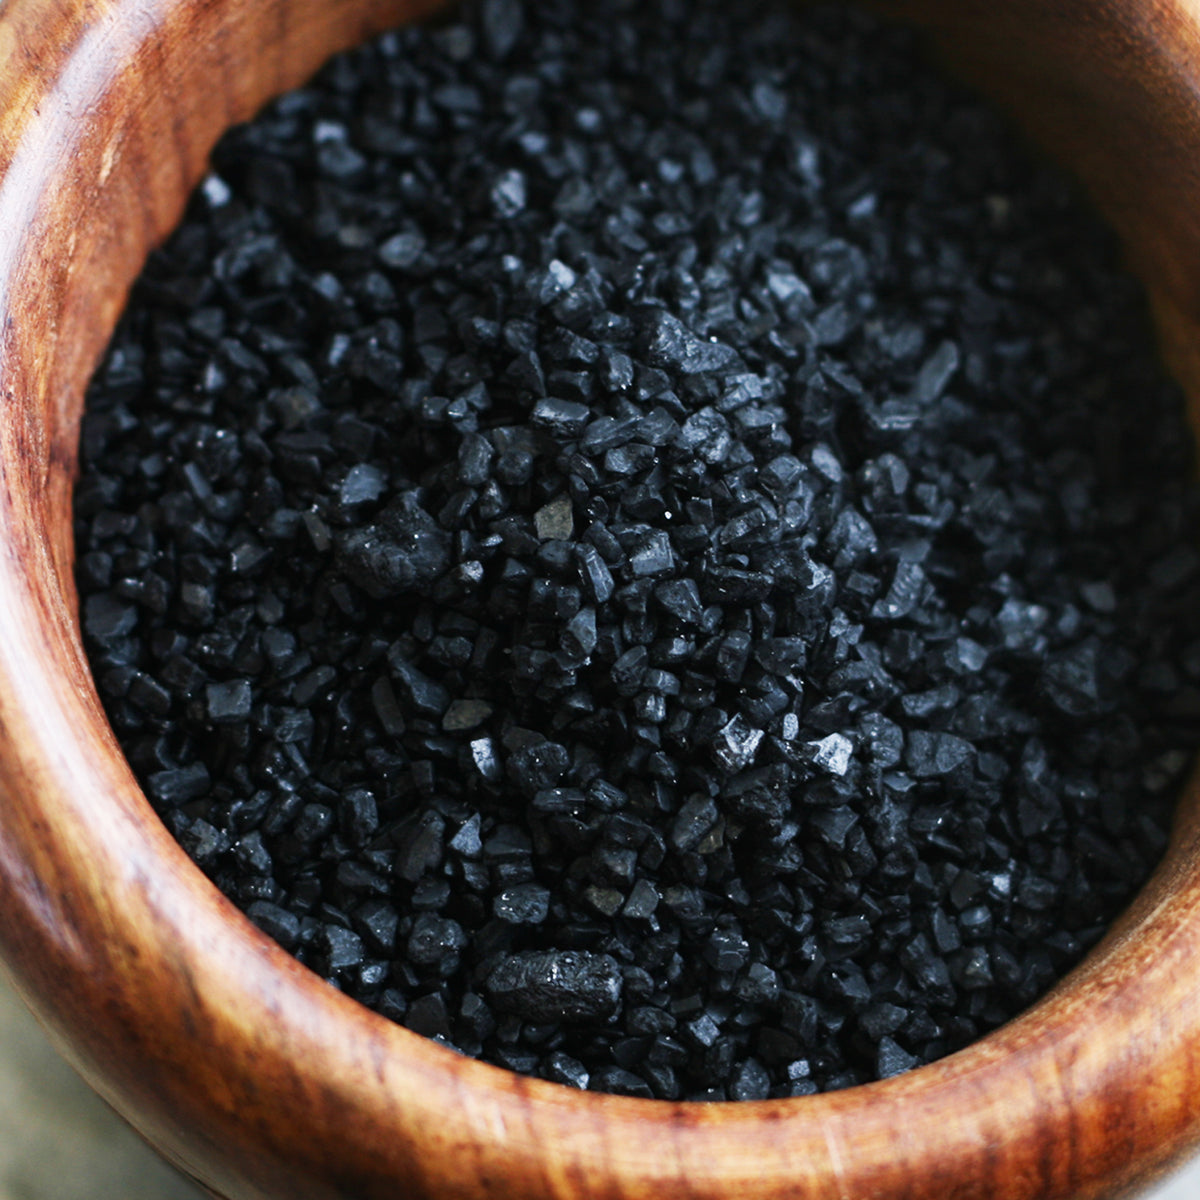 Black Hawaiian Sea Salt